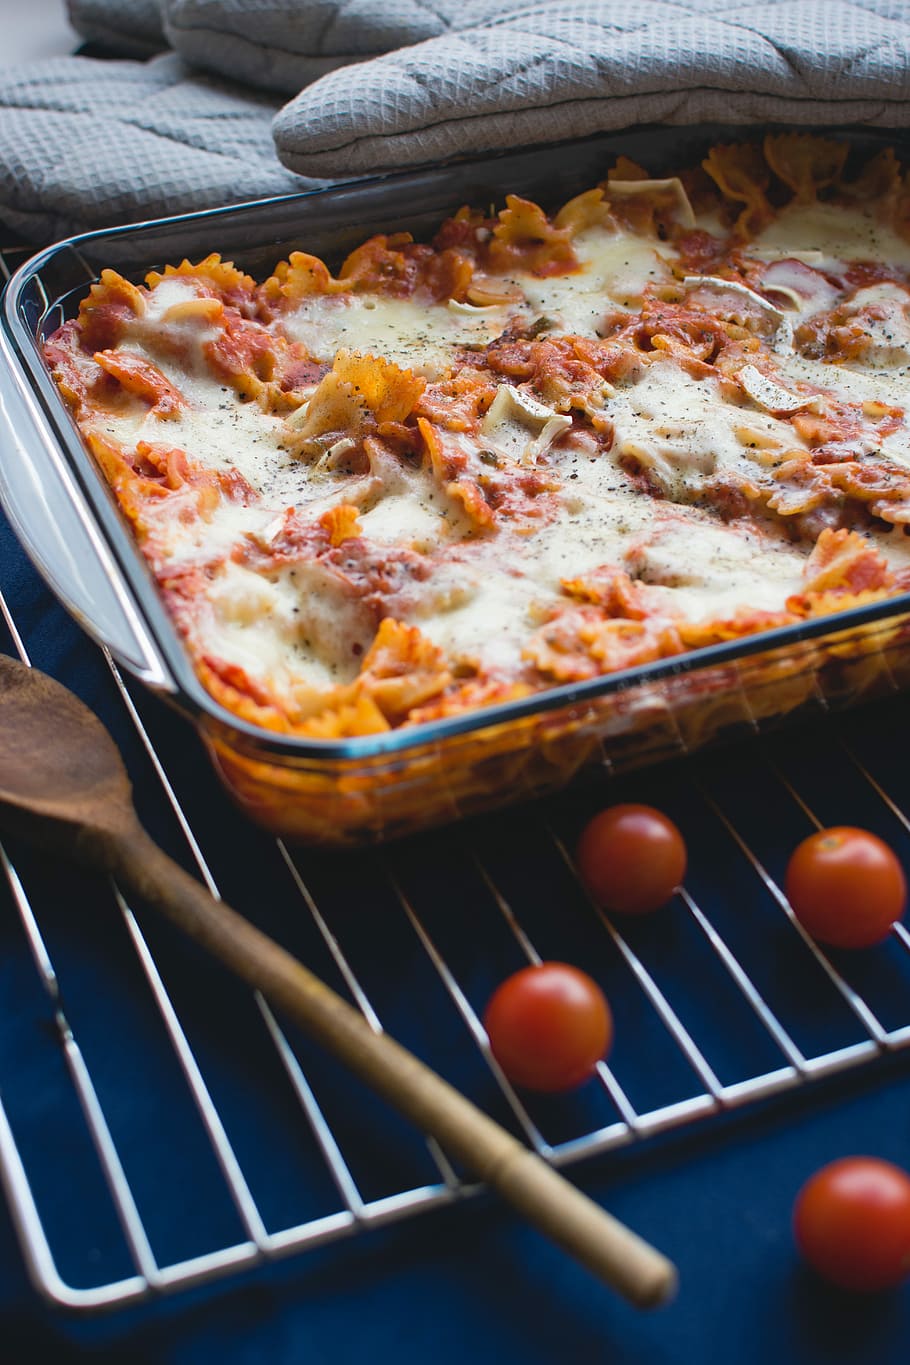 pasta, tomat, keju, Panggang, tomat ceri, buatan sendiri, Italia, makanan, makan, makan malam